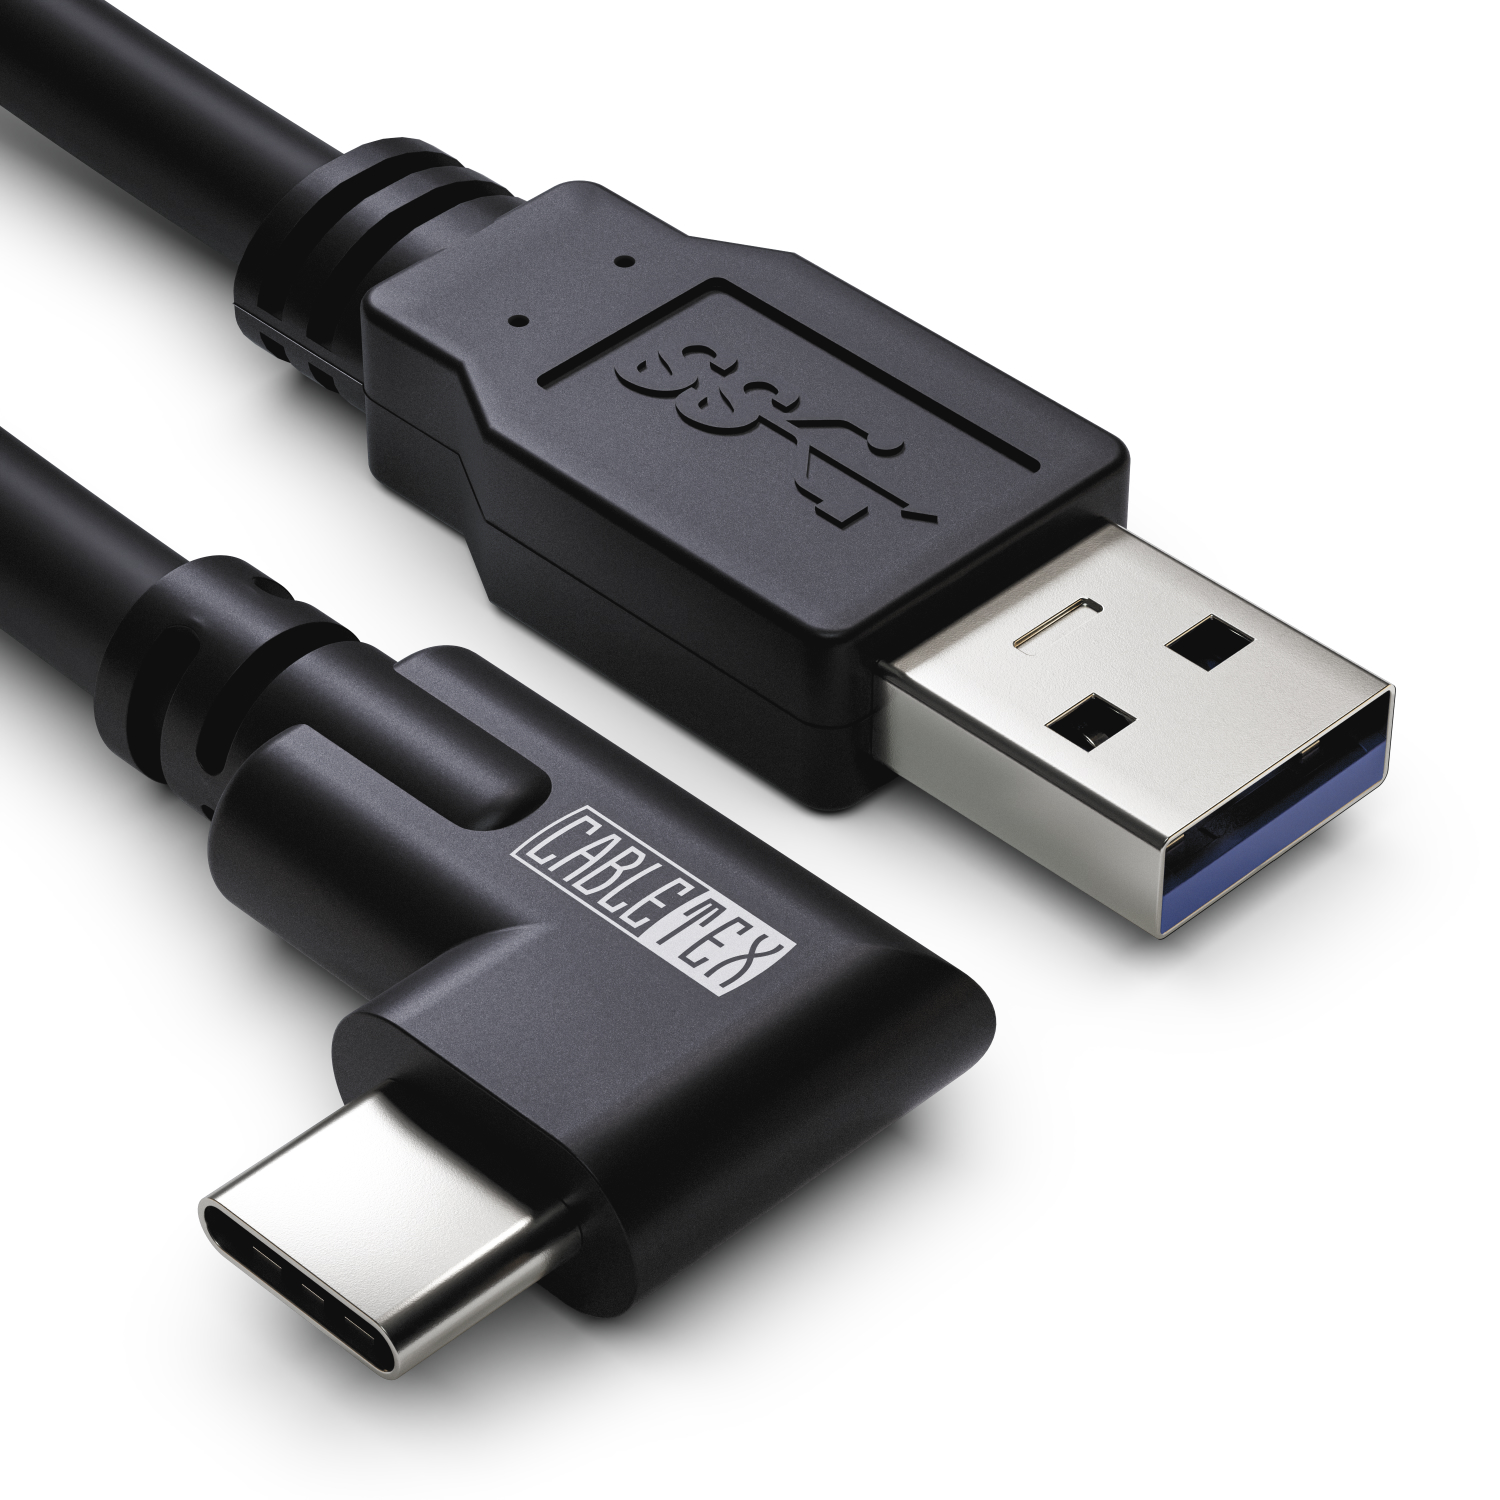 CABLETEX für Oculus Quest Link Kabel USB 2 Kabel